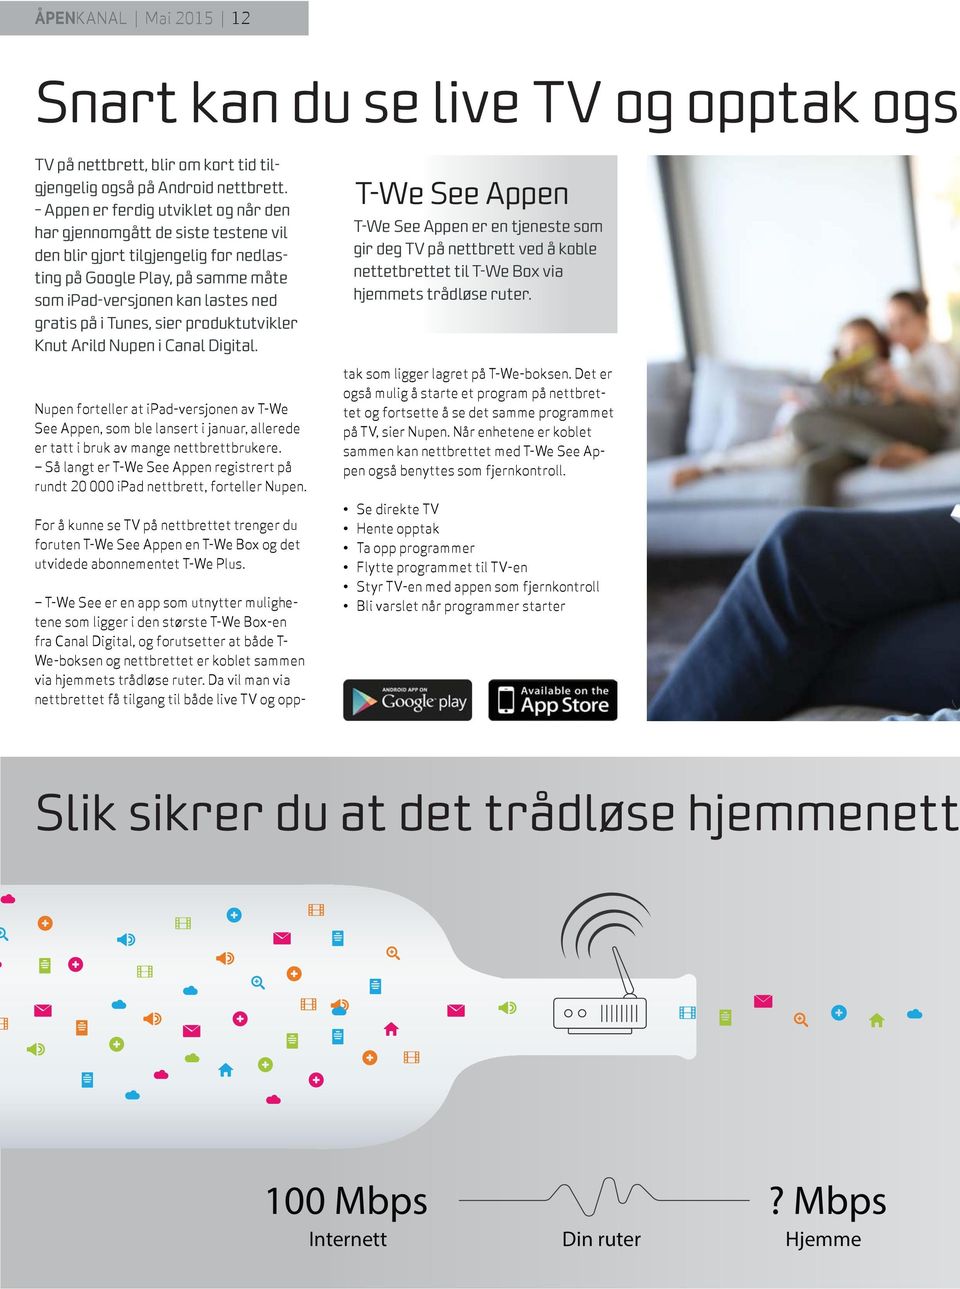 sier produktutvikler Knut Arild Nupen i Canal Digital. Nupen forteller at ipad-versjonen av T-We See Appen, som ble lansert i januar, allerede er tatt i bruk av mange nettbrettbrukere.